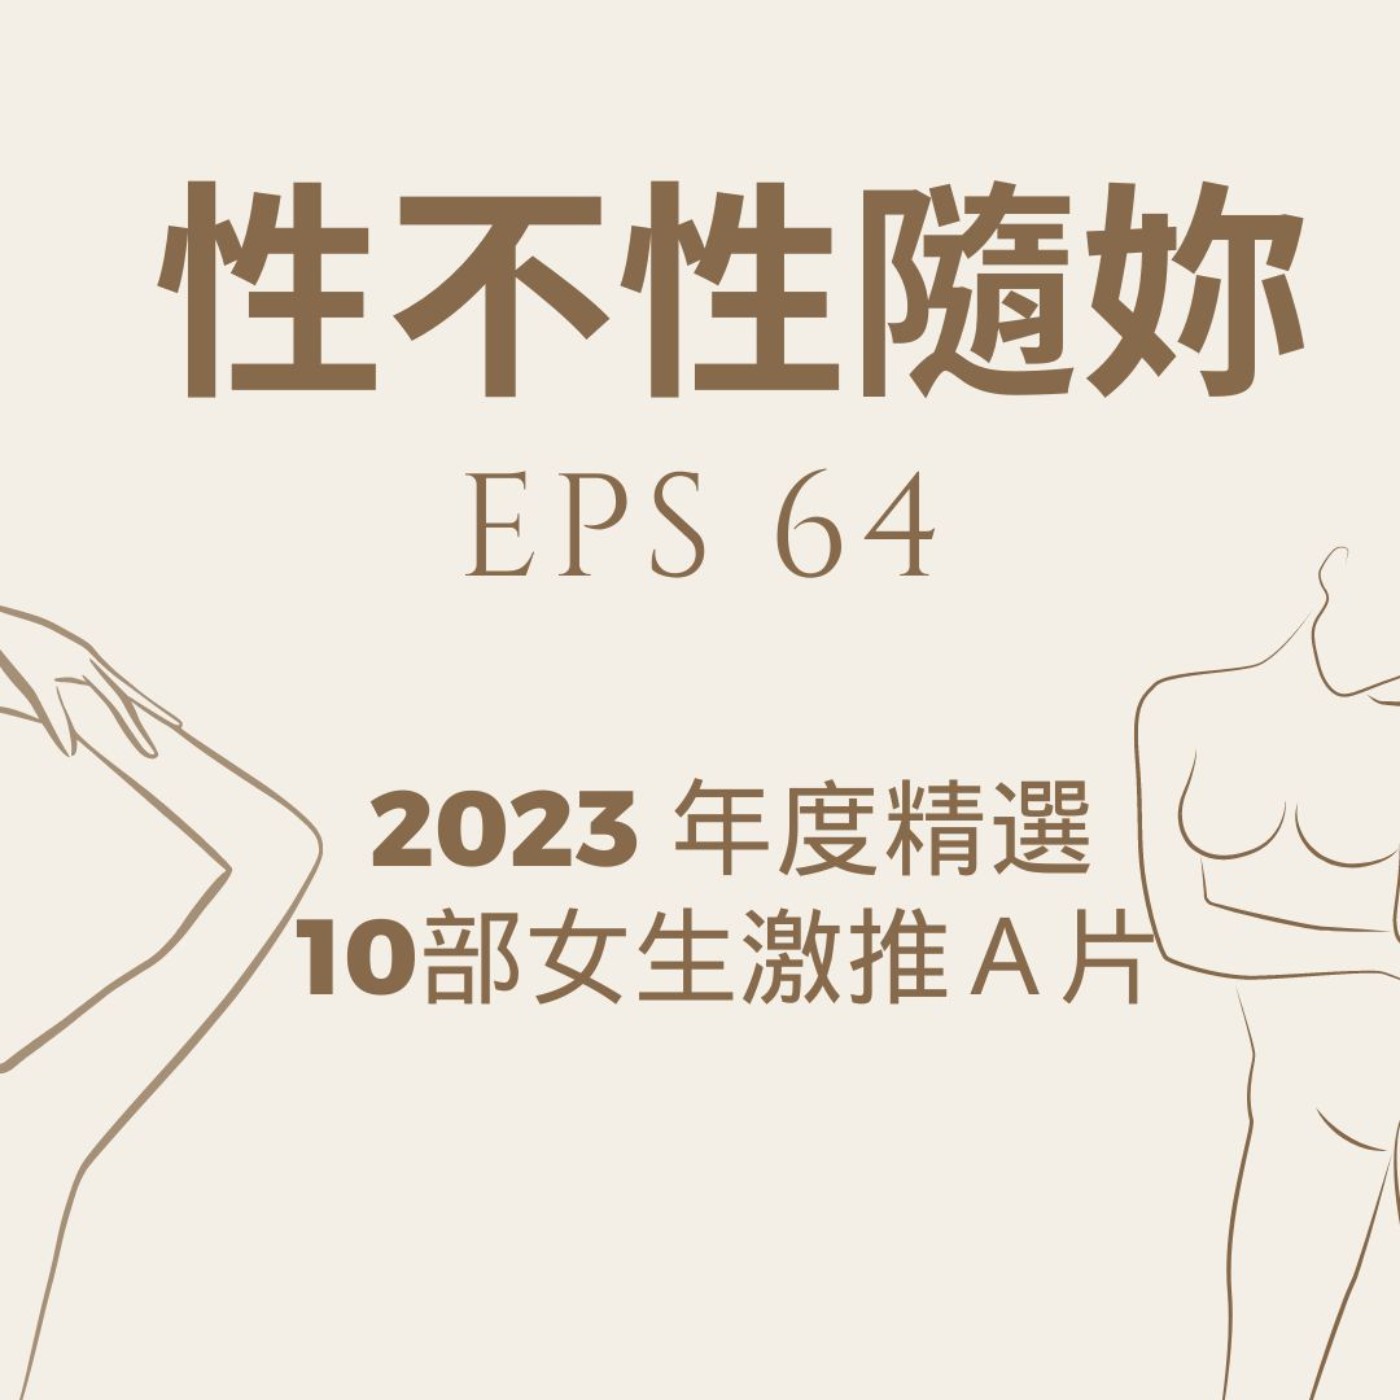 『性不性隨妳 』eps.63 2023年度十部精選女生激推的A片